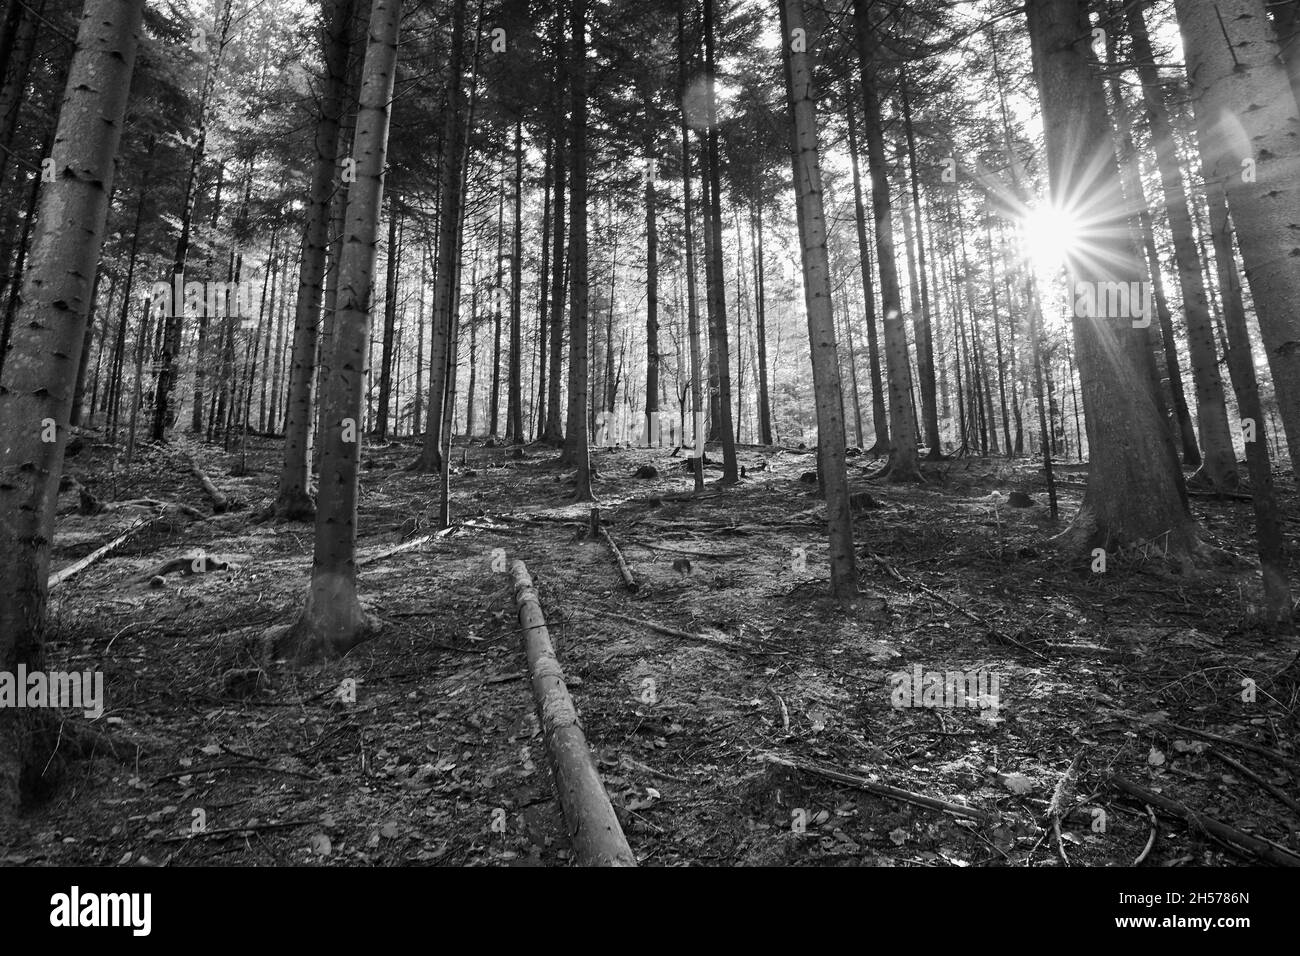 Le soleil brille de magnifiques rayons à travers les arbres de la forêt Banque D'Images